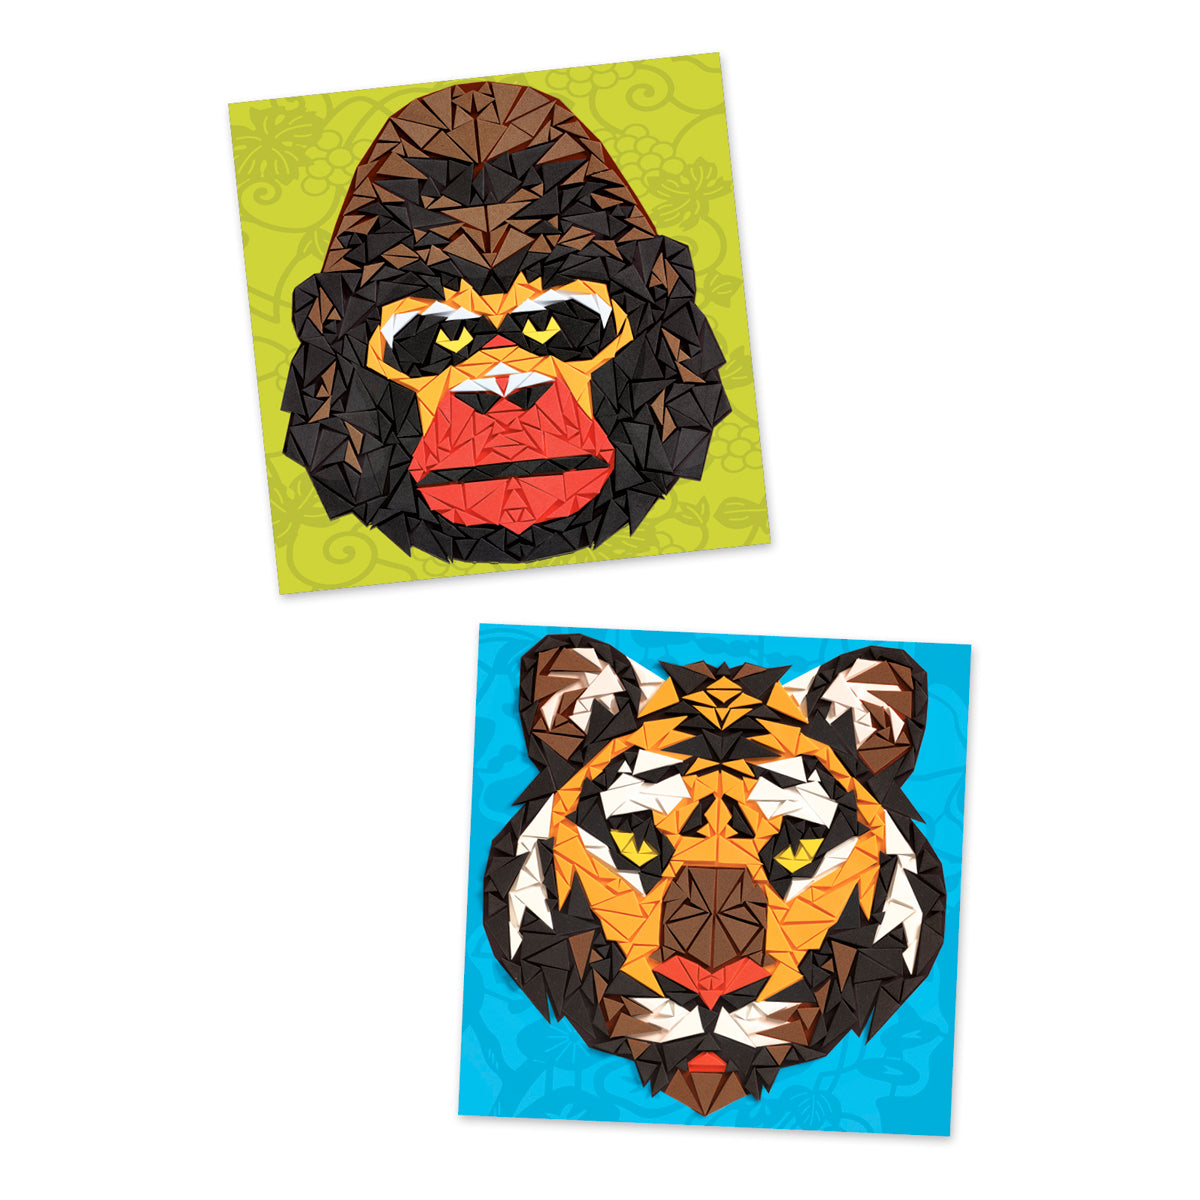 Mosaics Khan Djeco 8-14 years tiger and gorilla